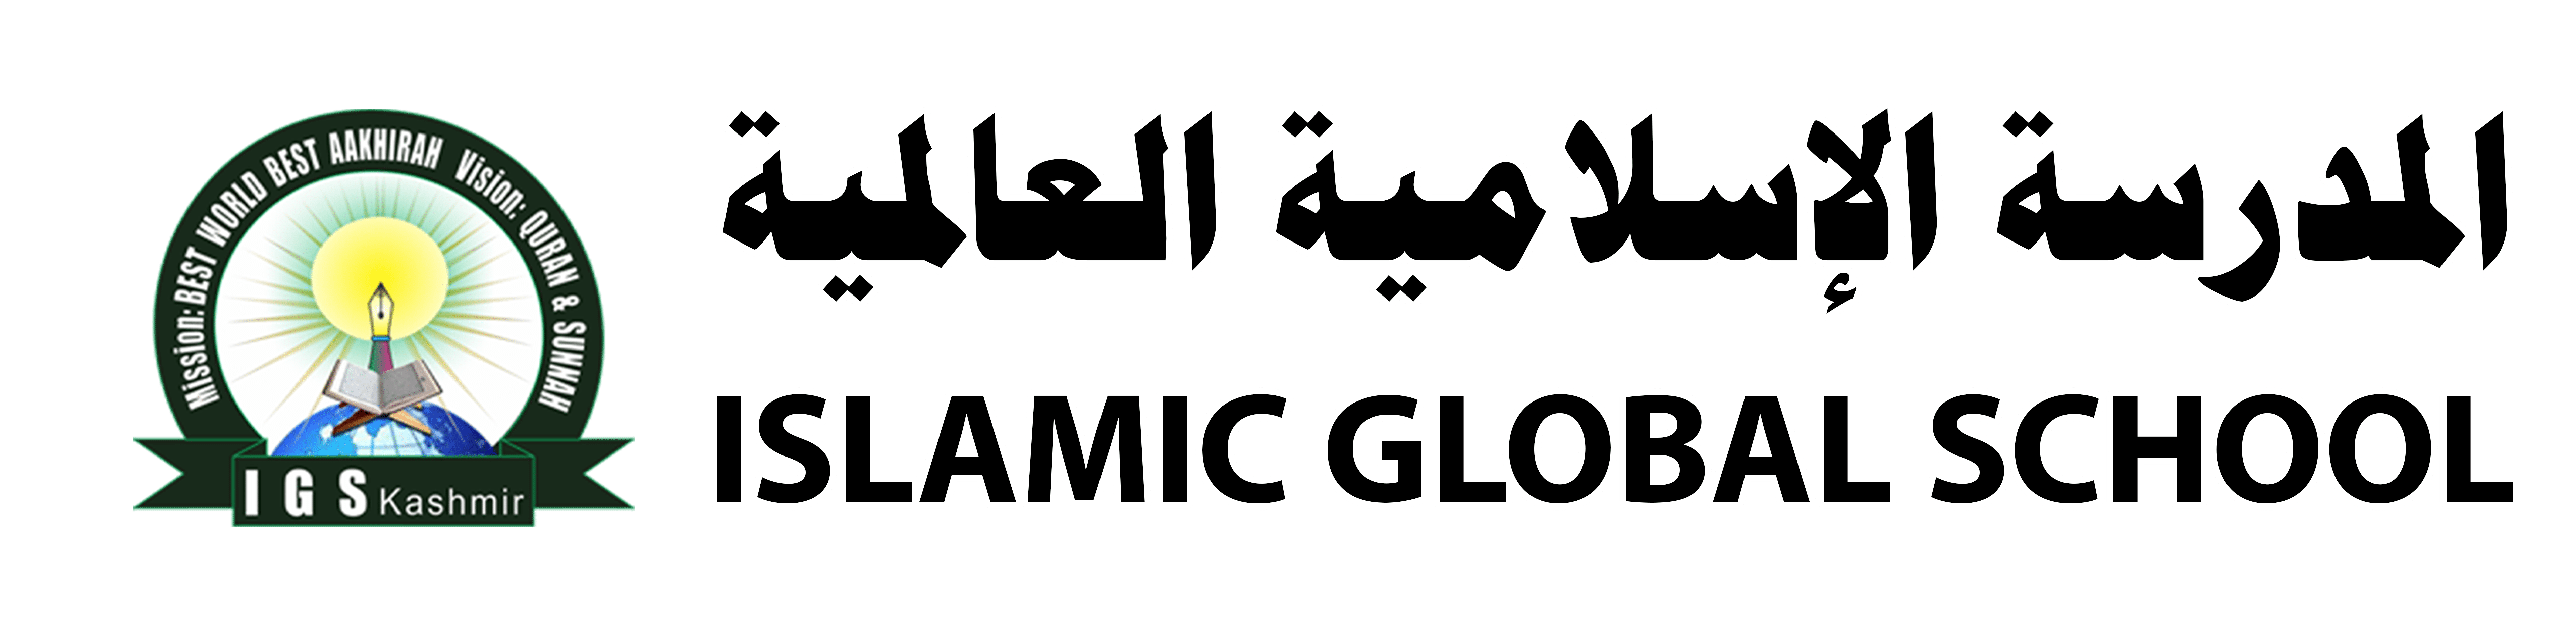 Islamic Global School